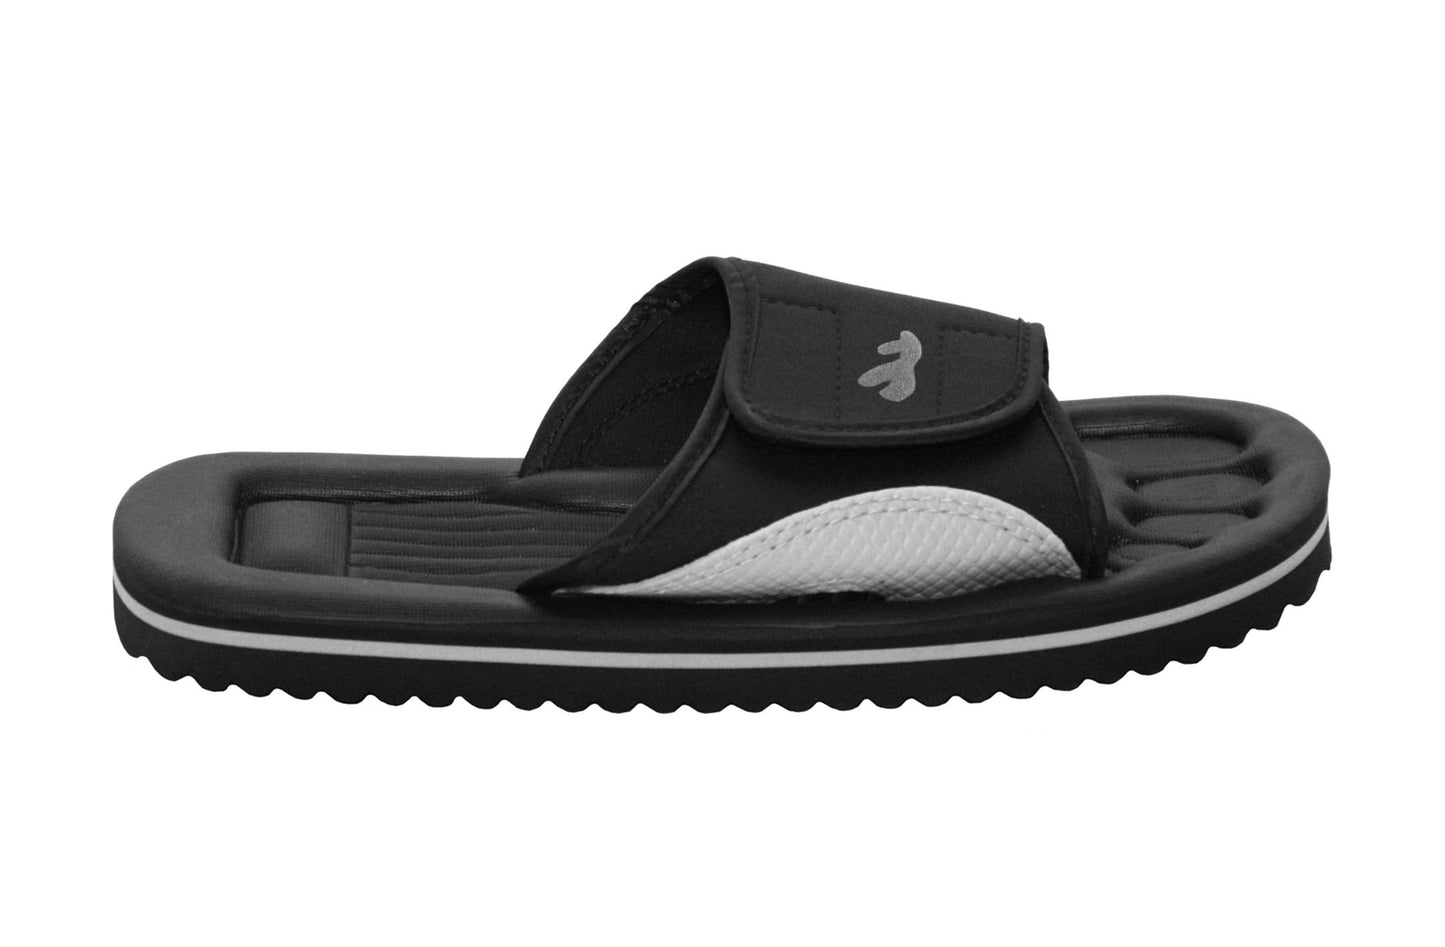 Unisex Lightweight Black Slides Touch Fasten Casual Beach Summer Pool Flip Flop Sandals